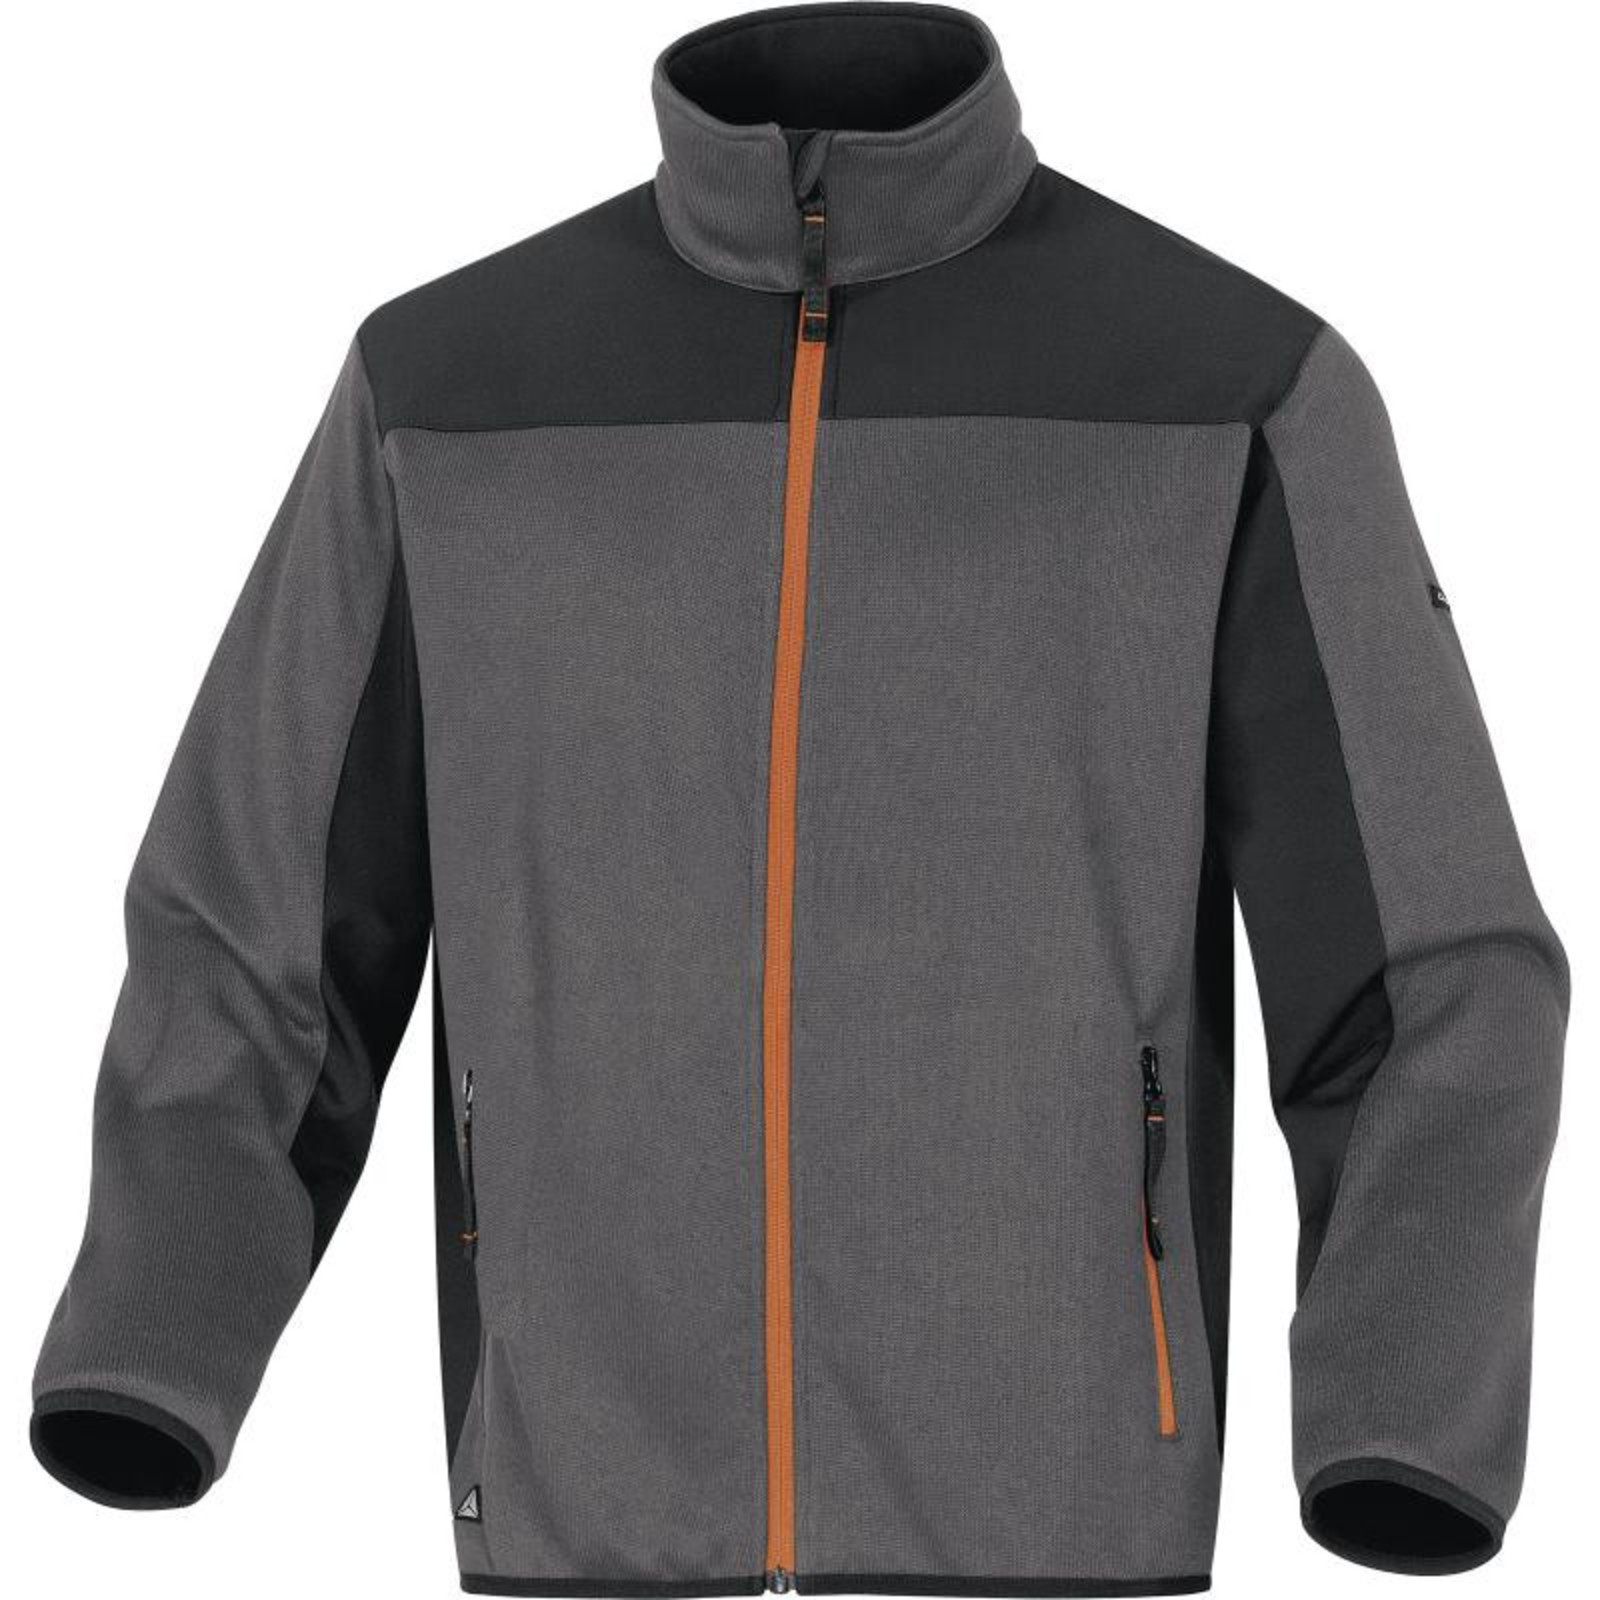 Softshellovo-pleteninová bunda Delta Plus Beaver - veľkosť: 3XL, farba: sivá/oranžová